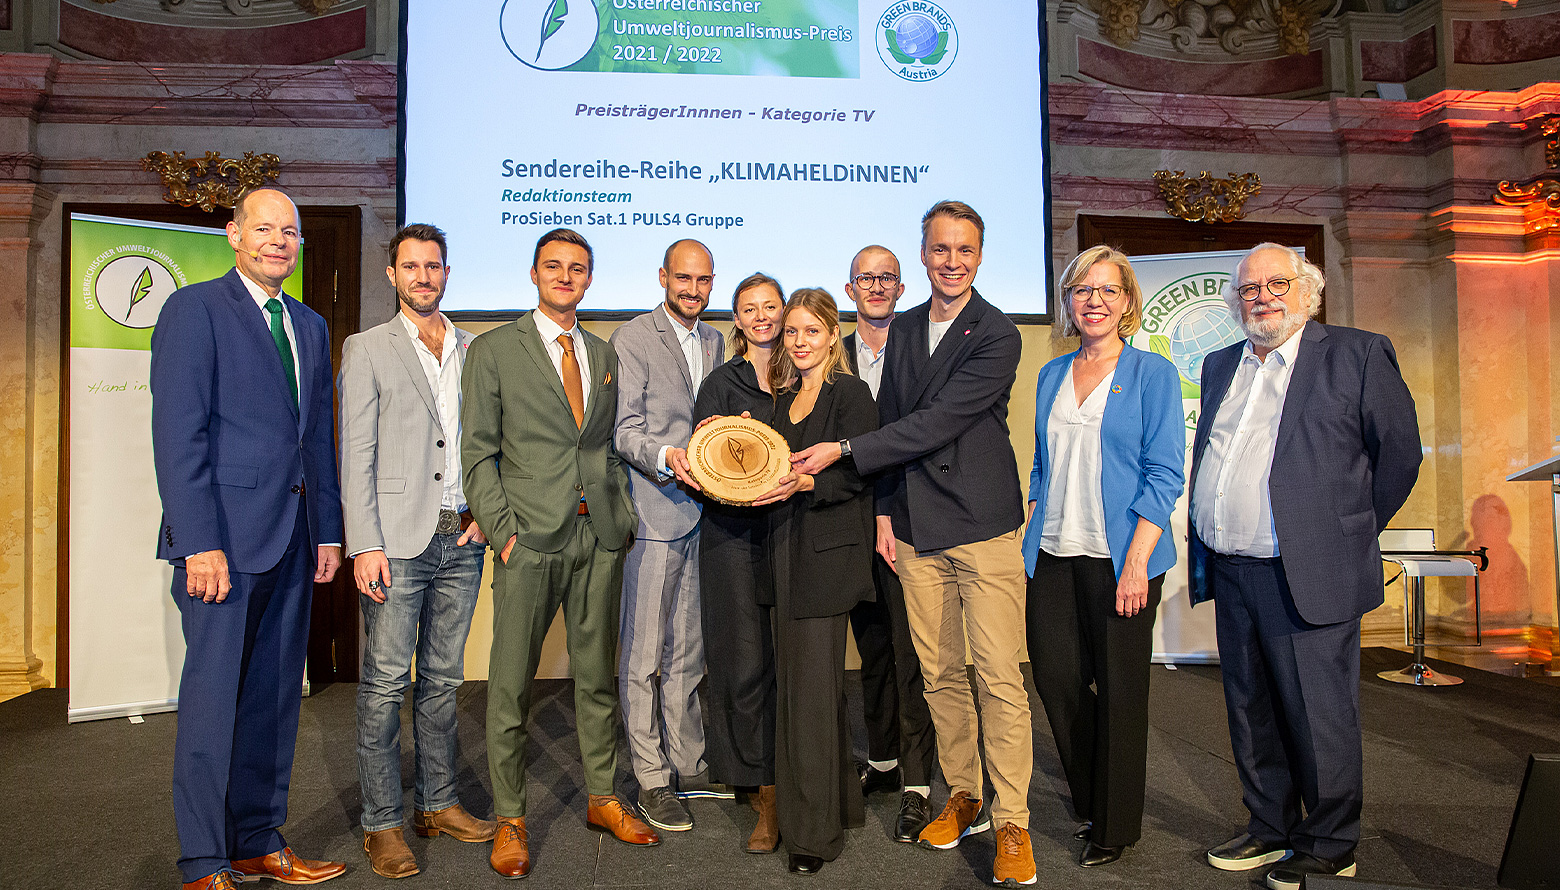 Österreichischer Umwelt-Journalismuspreis für Nachhaltigkeitsmagazin KLIMAHELDiNNEN (Photo)